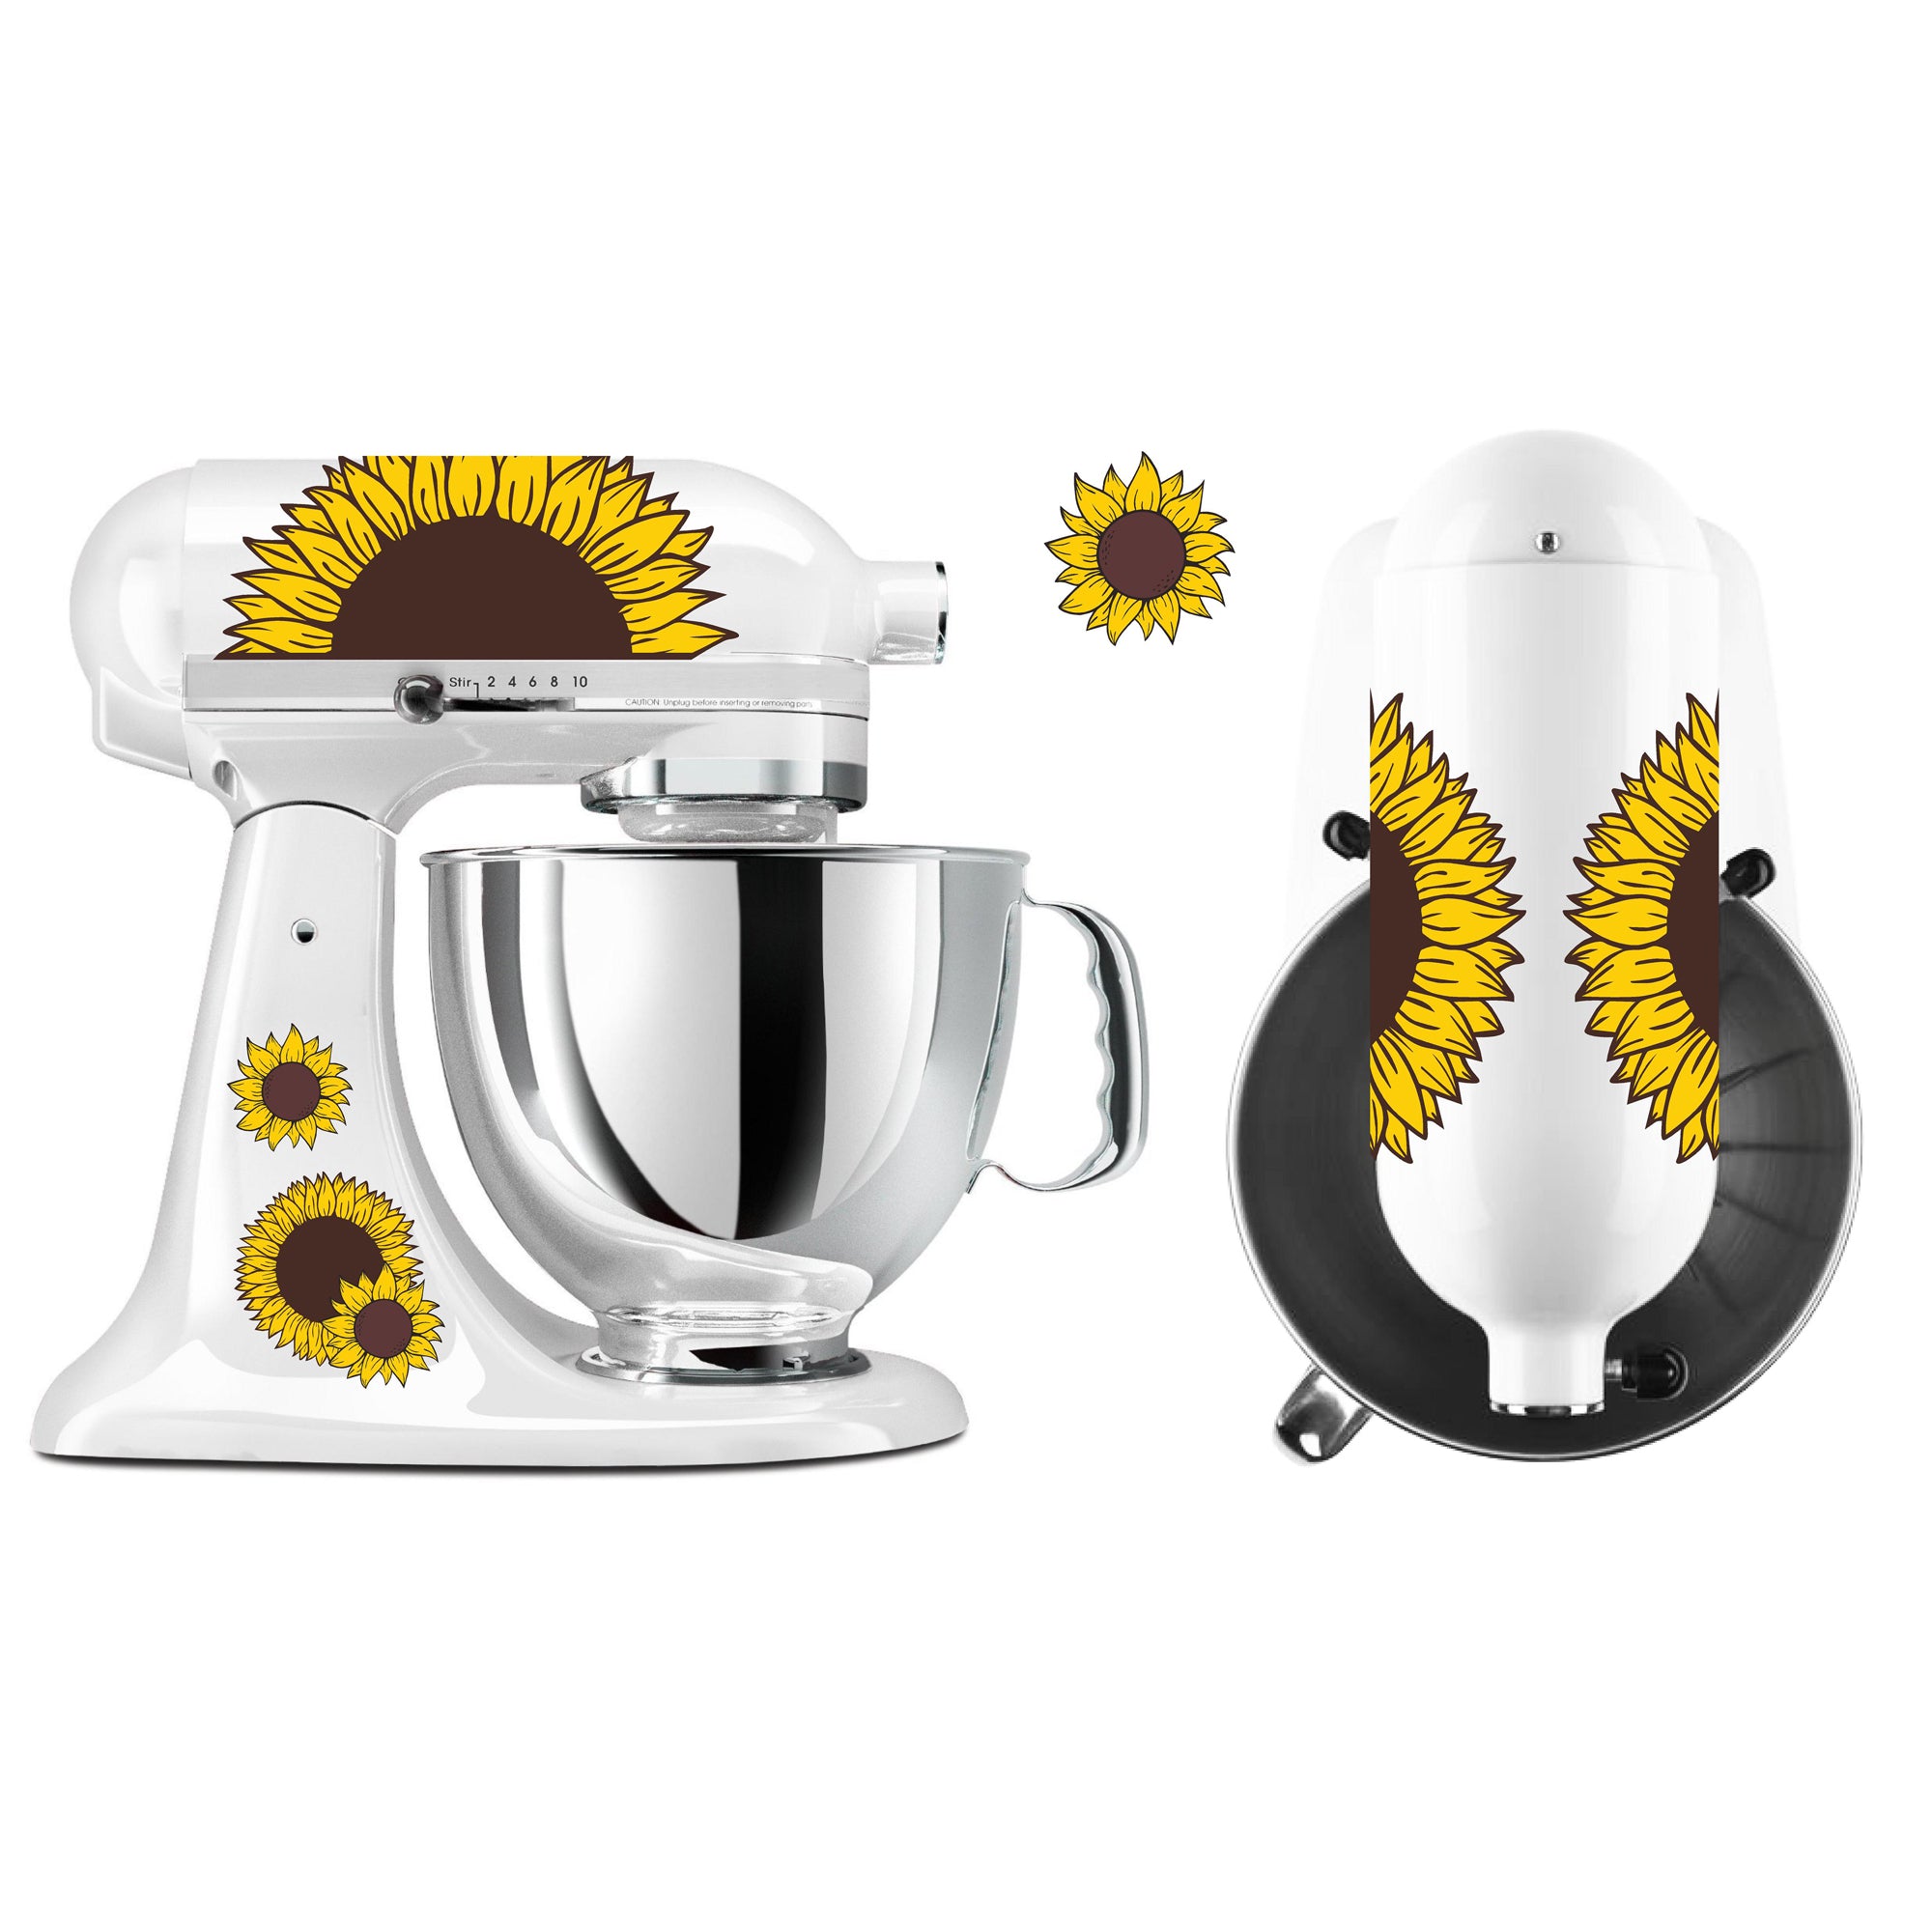 Sunflower Kitchenaid, Kitchen Mixer Decal Sticker Set. Sunflowers